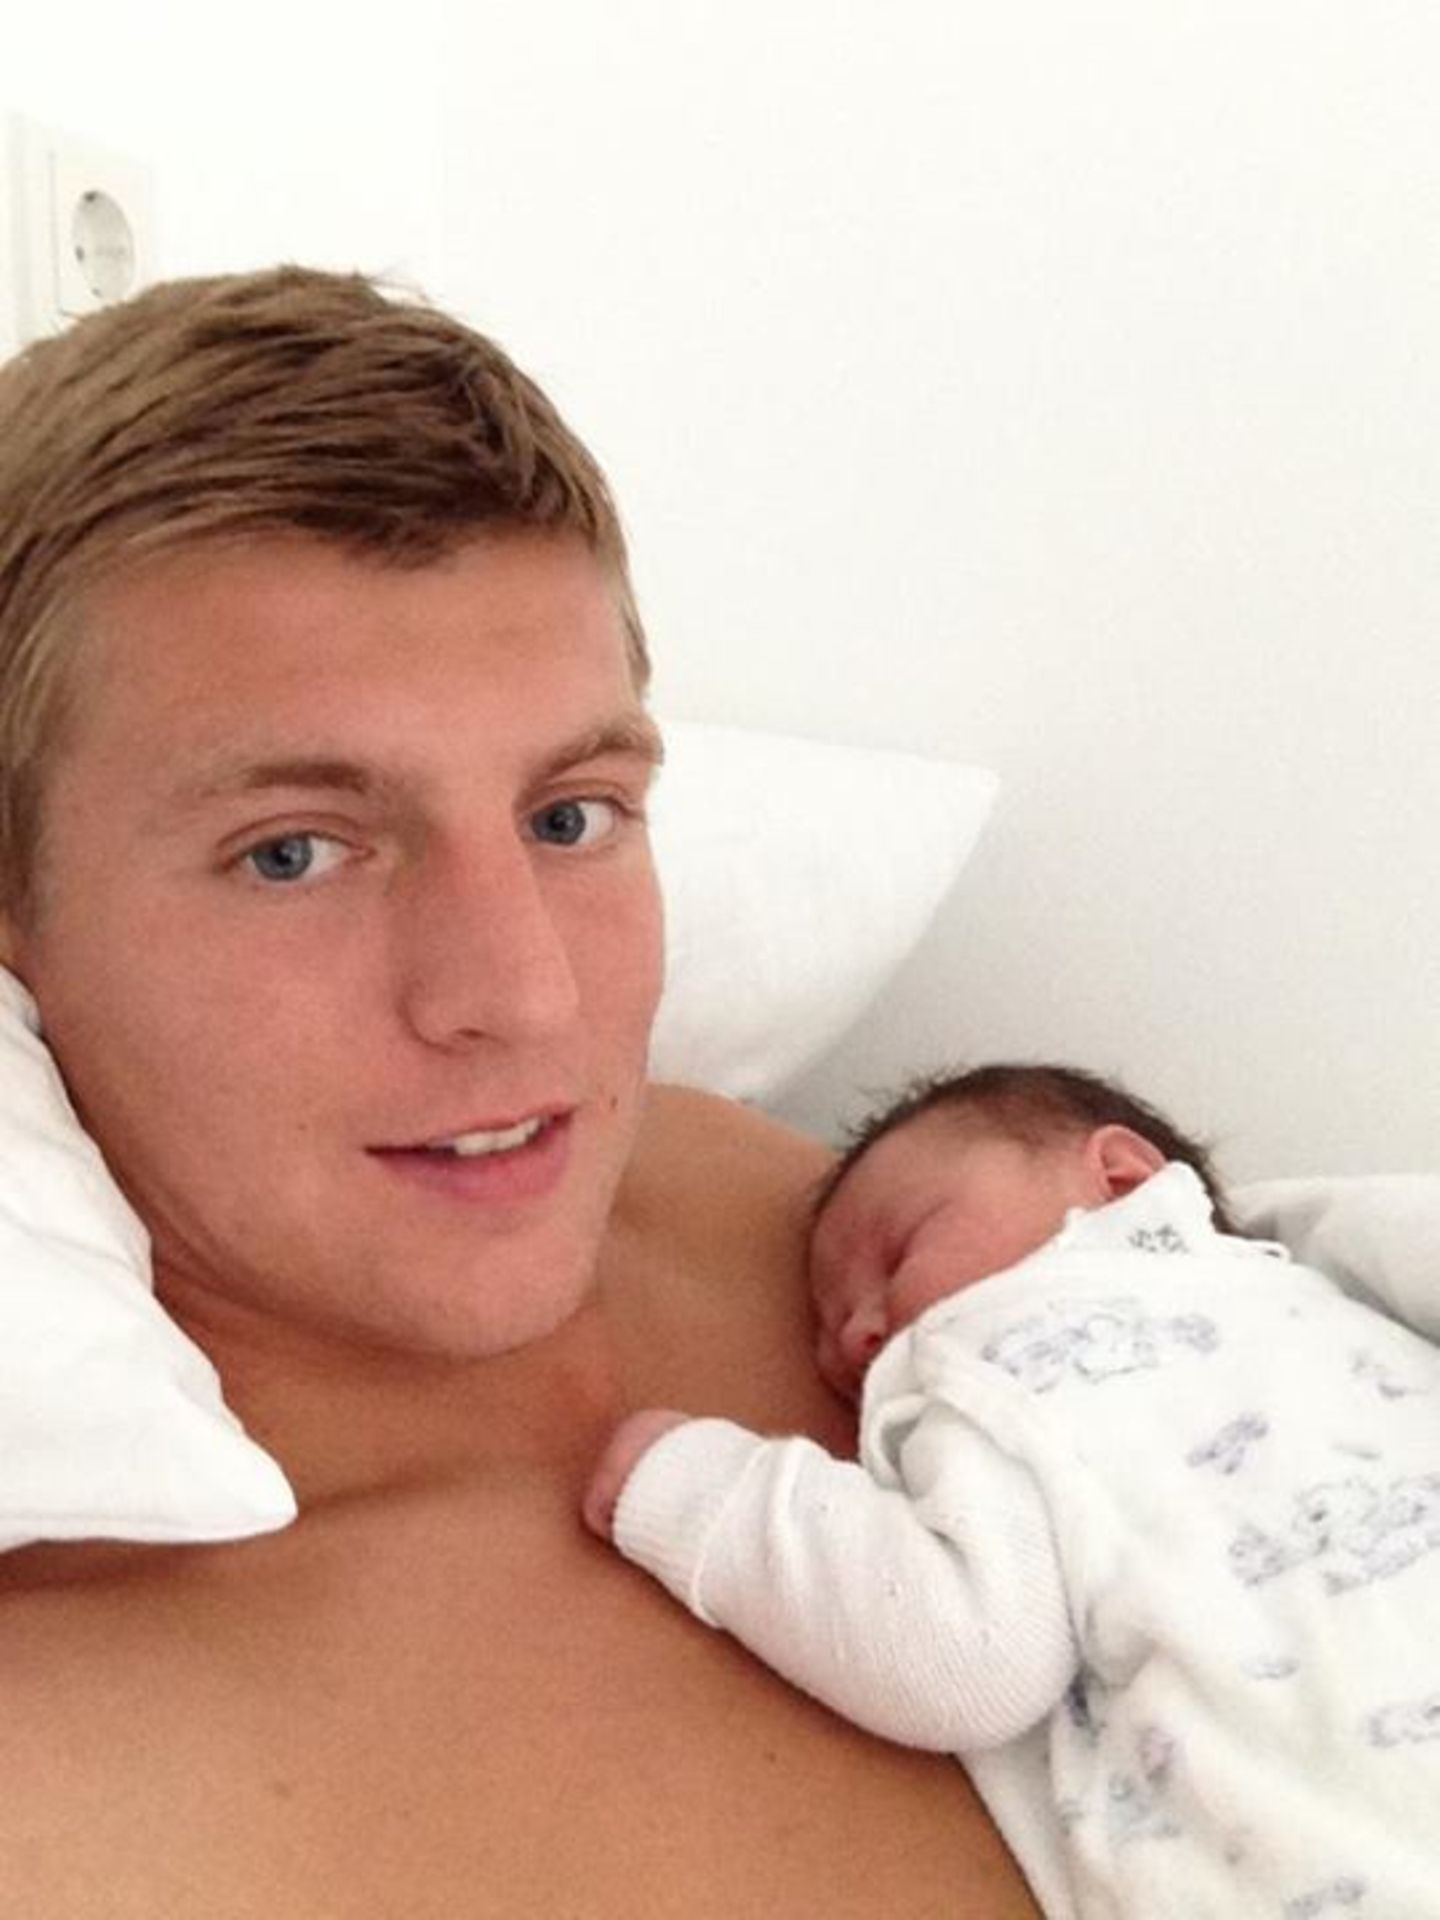 August 2013: Nationalfußballer Toni Kroos ist zum ersten Mal Vater geworden. Der "Bayern"-Star stellt auf Facebook seinen Sohn Leon vor.